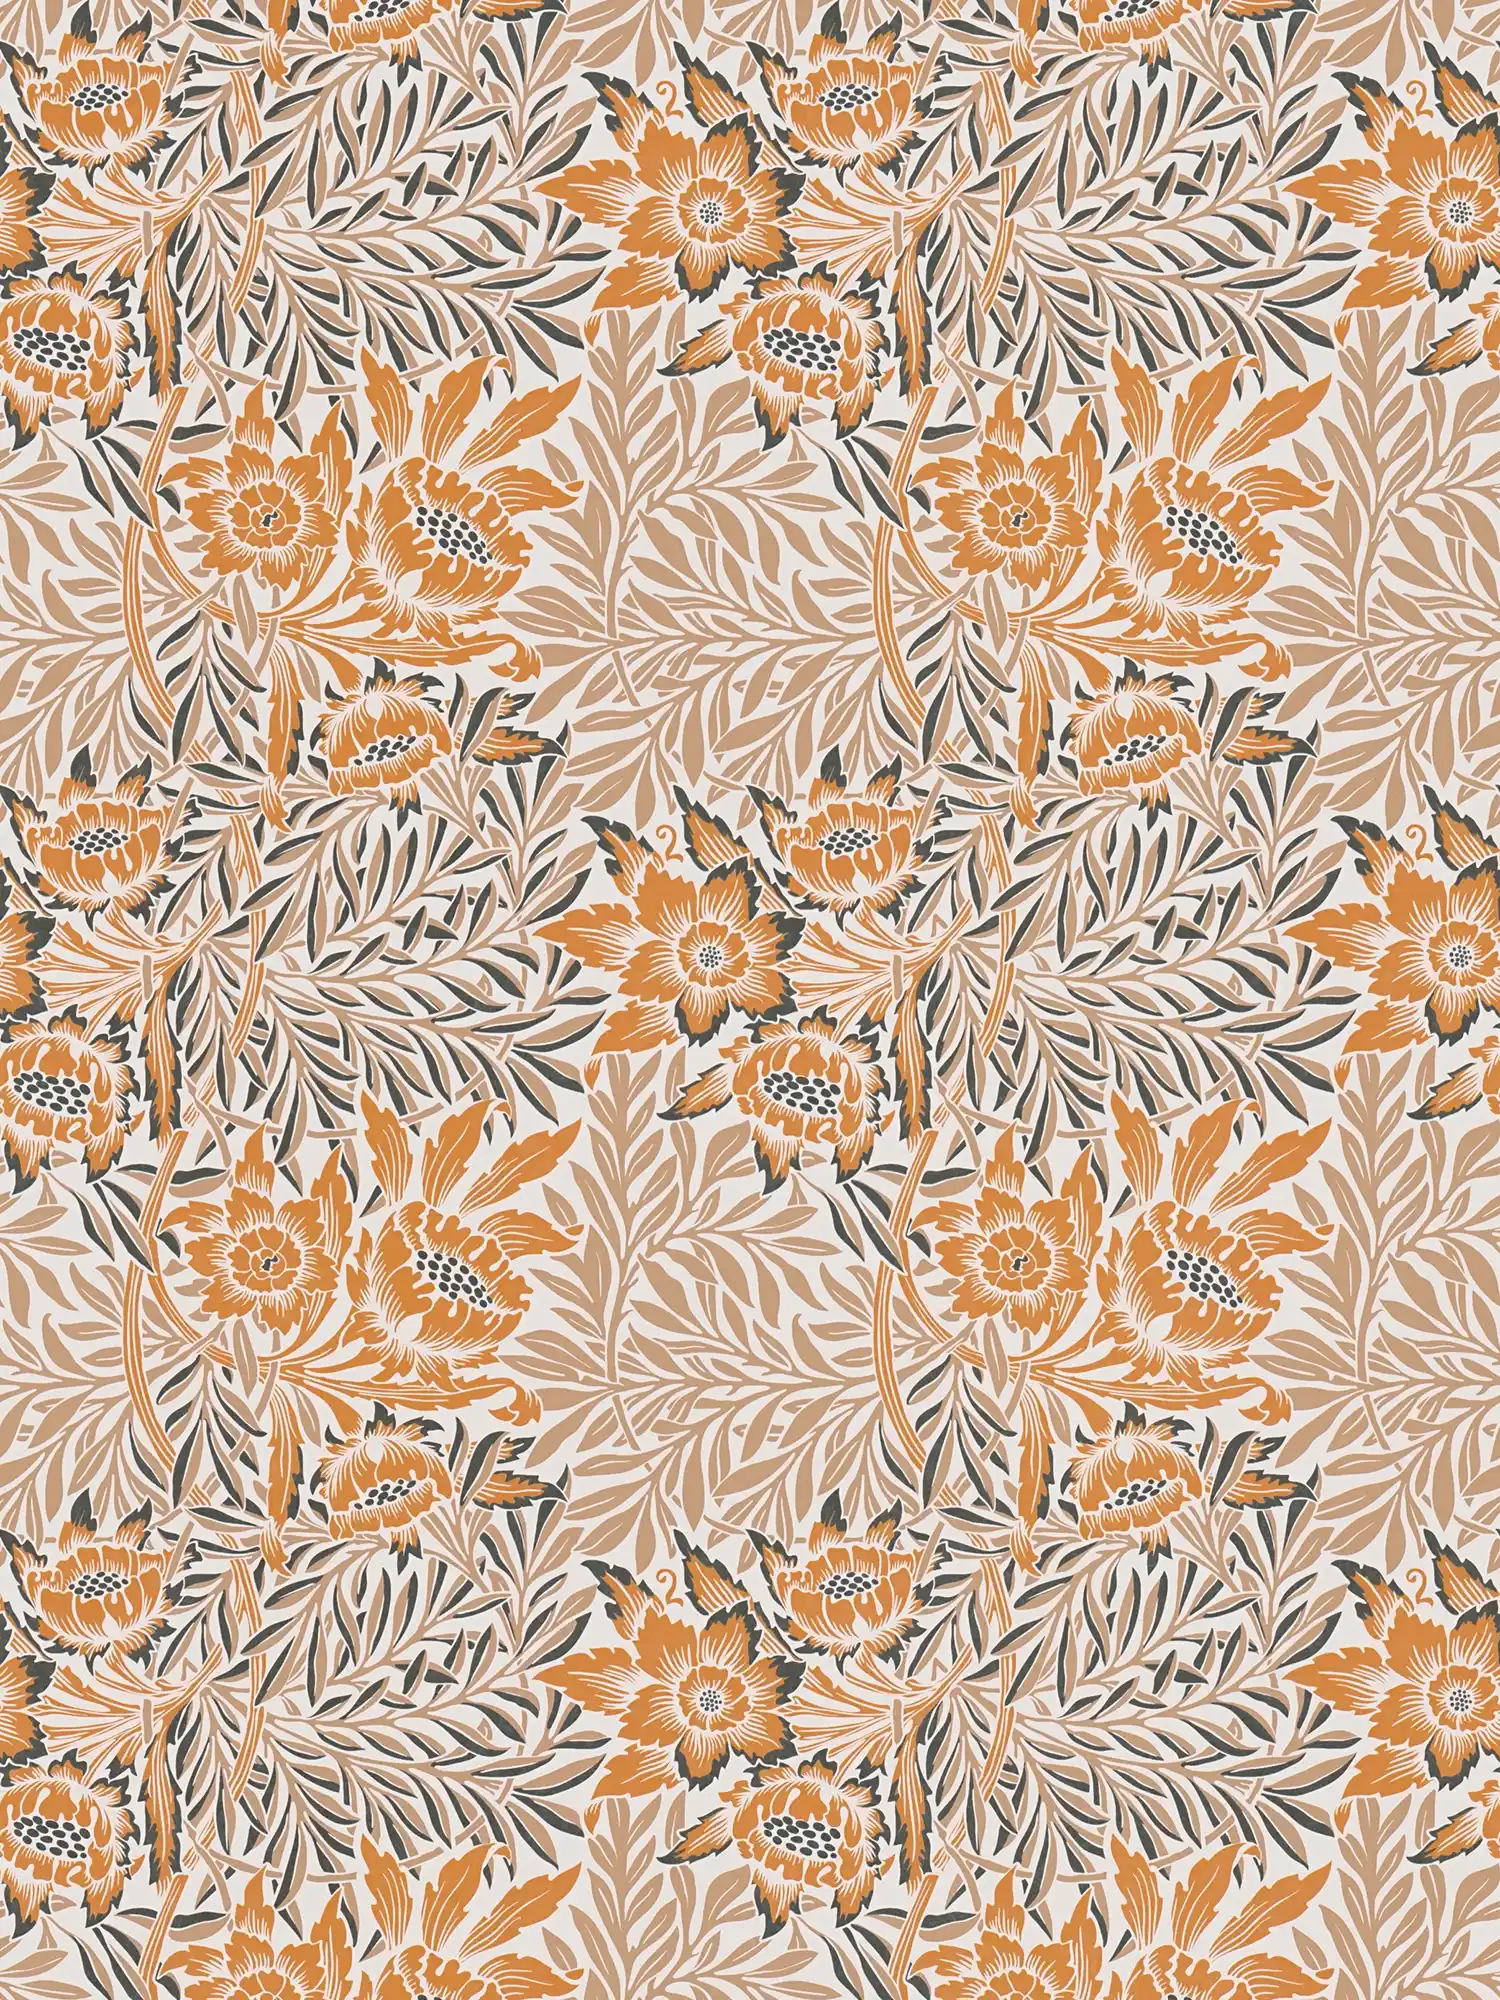         Papier peint intissé avec fleurs et rinceaux de feuilles - orange, beige, blanc
    